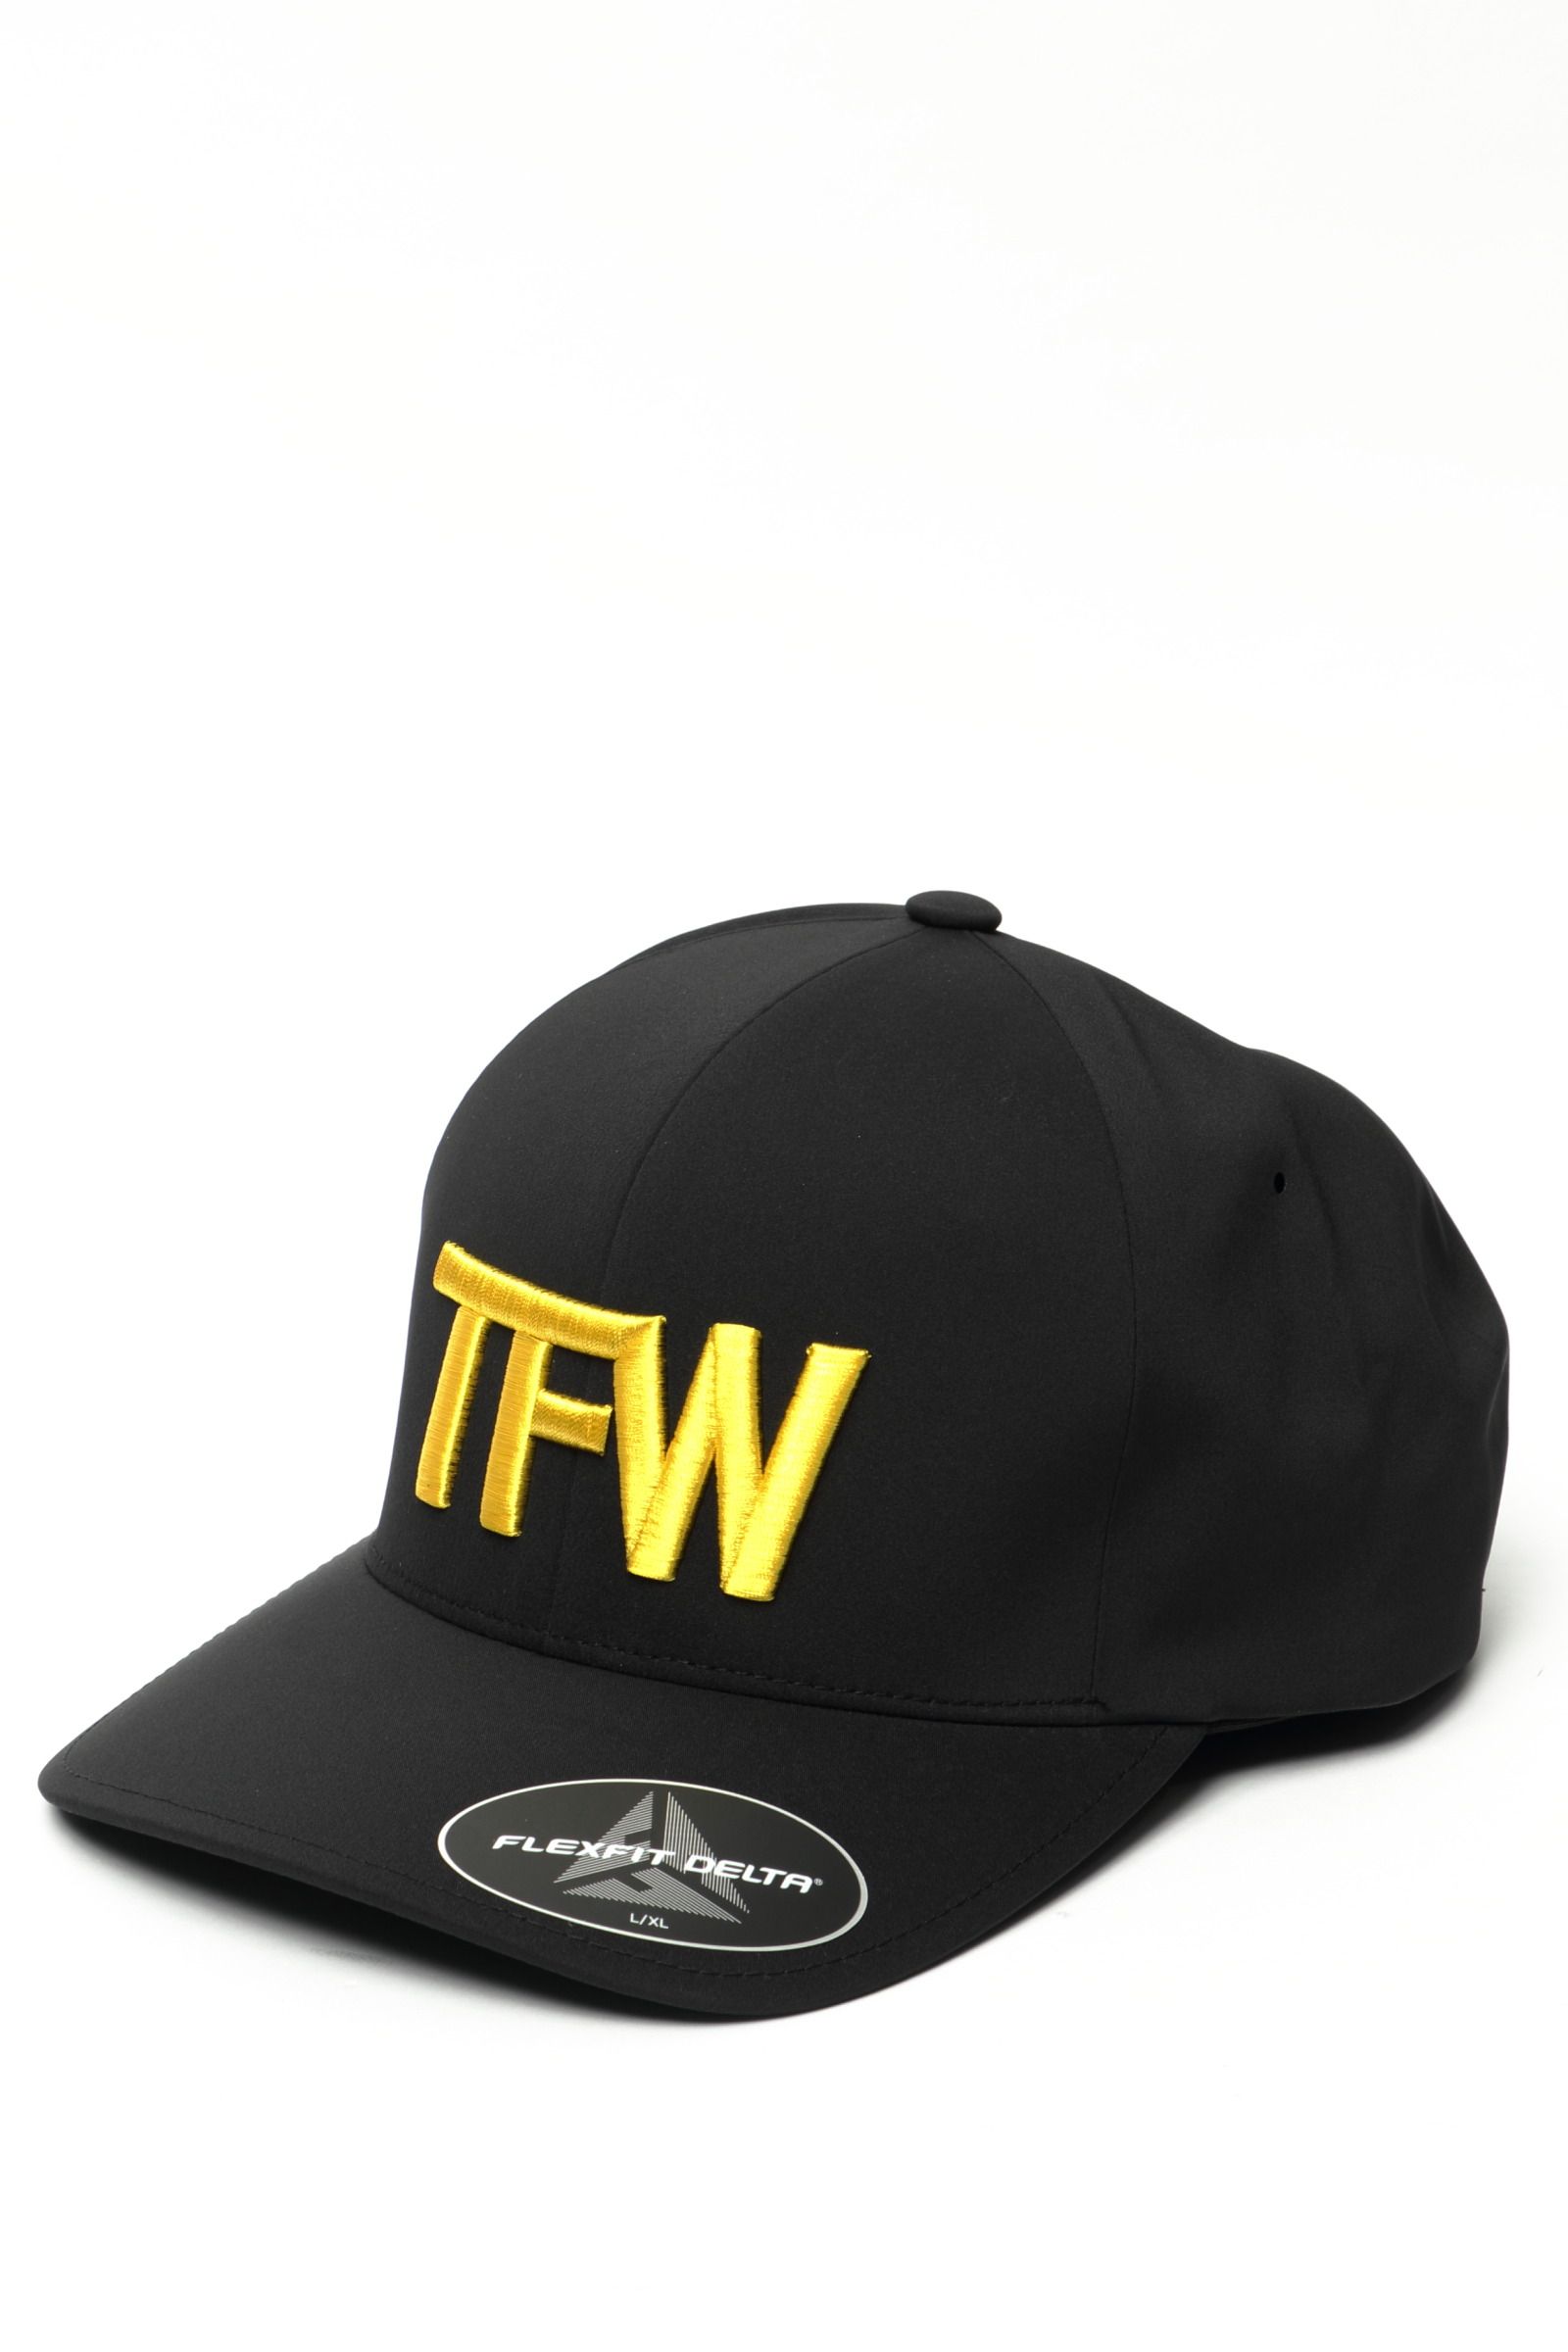 TFW49 - ポリエステル 防臭 防菌 キャップ PANEL CAP / ホワイト 